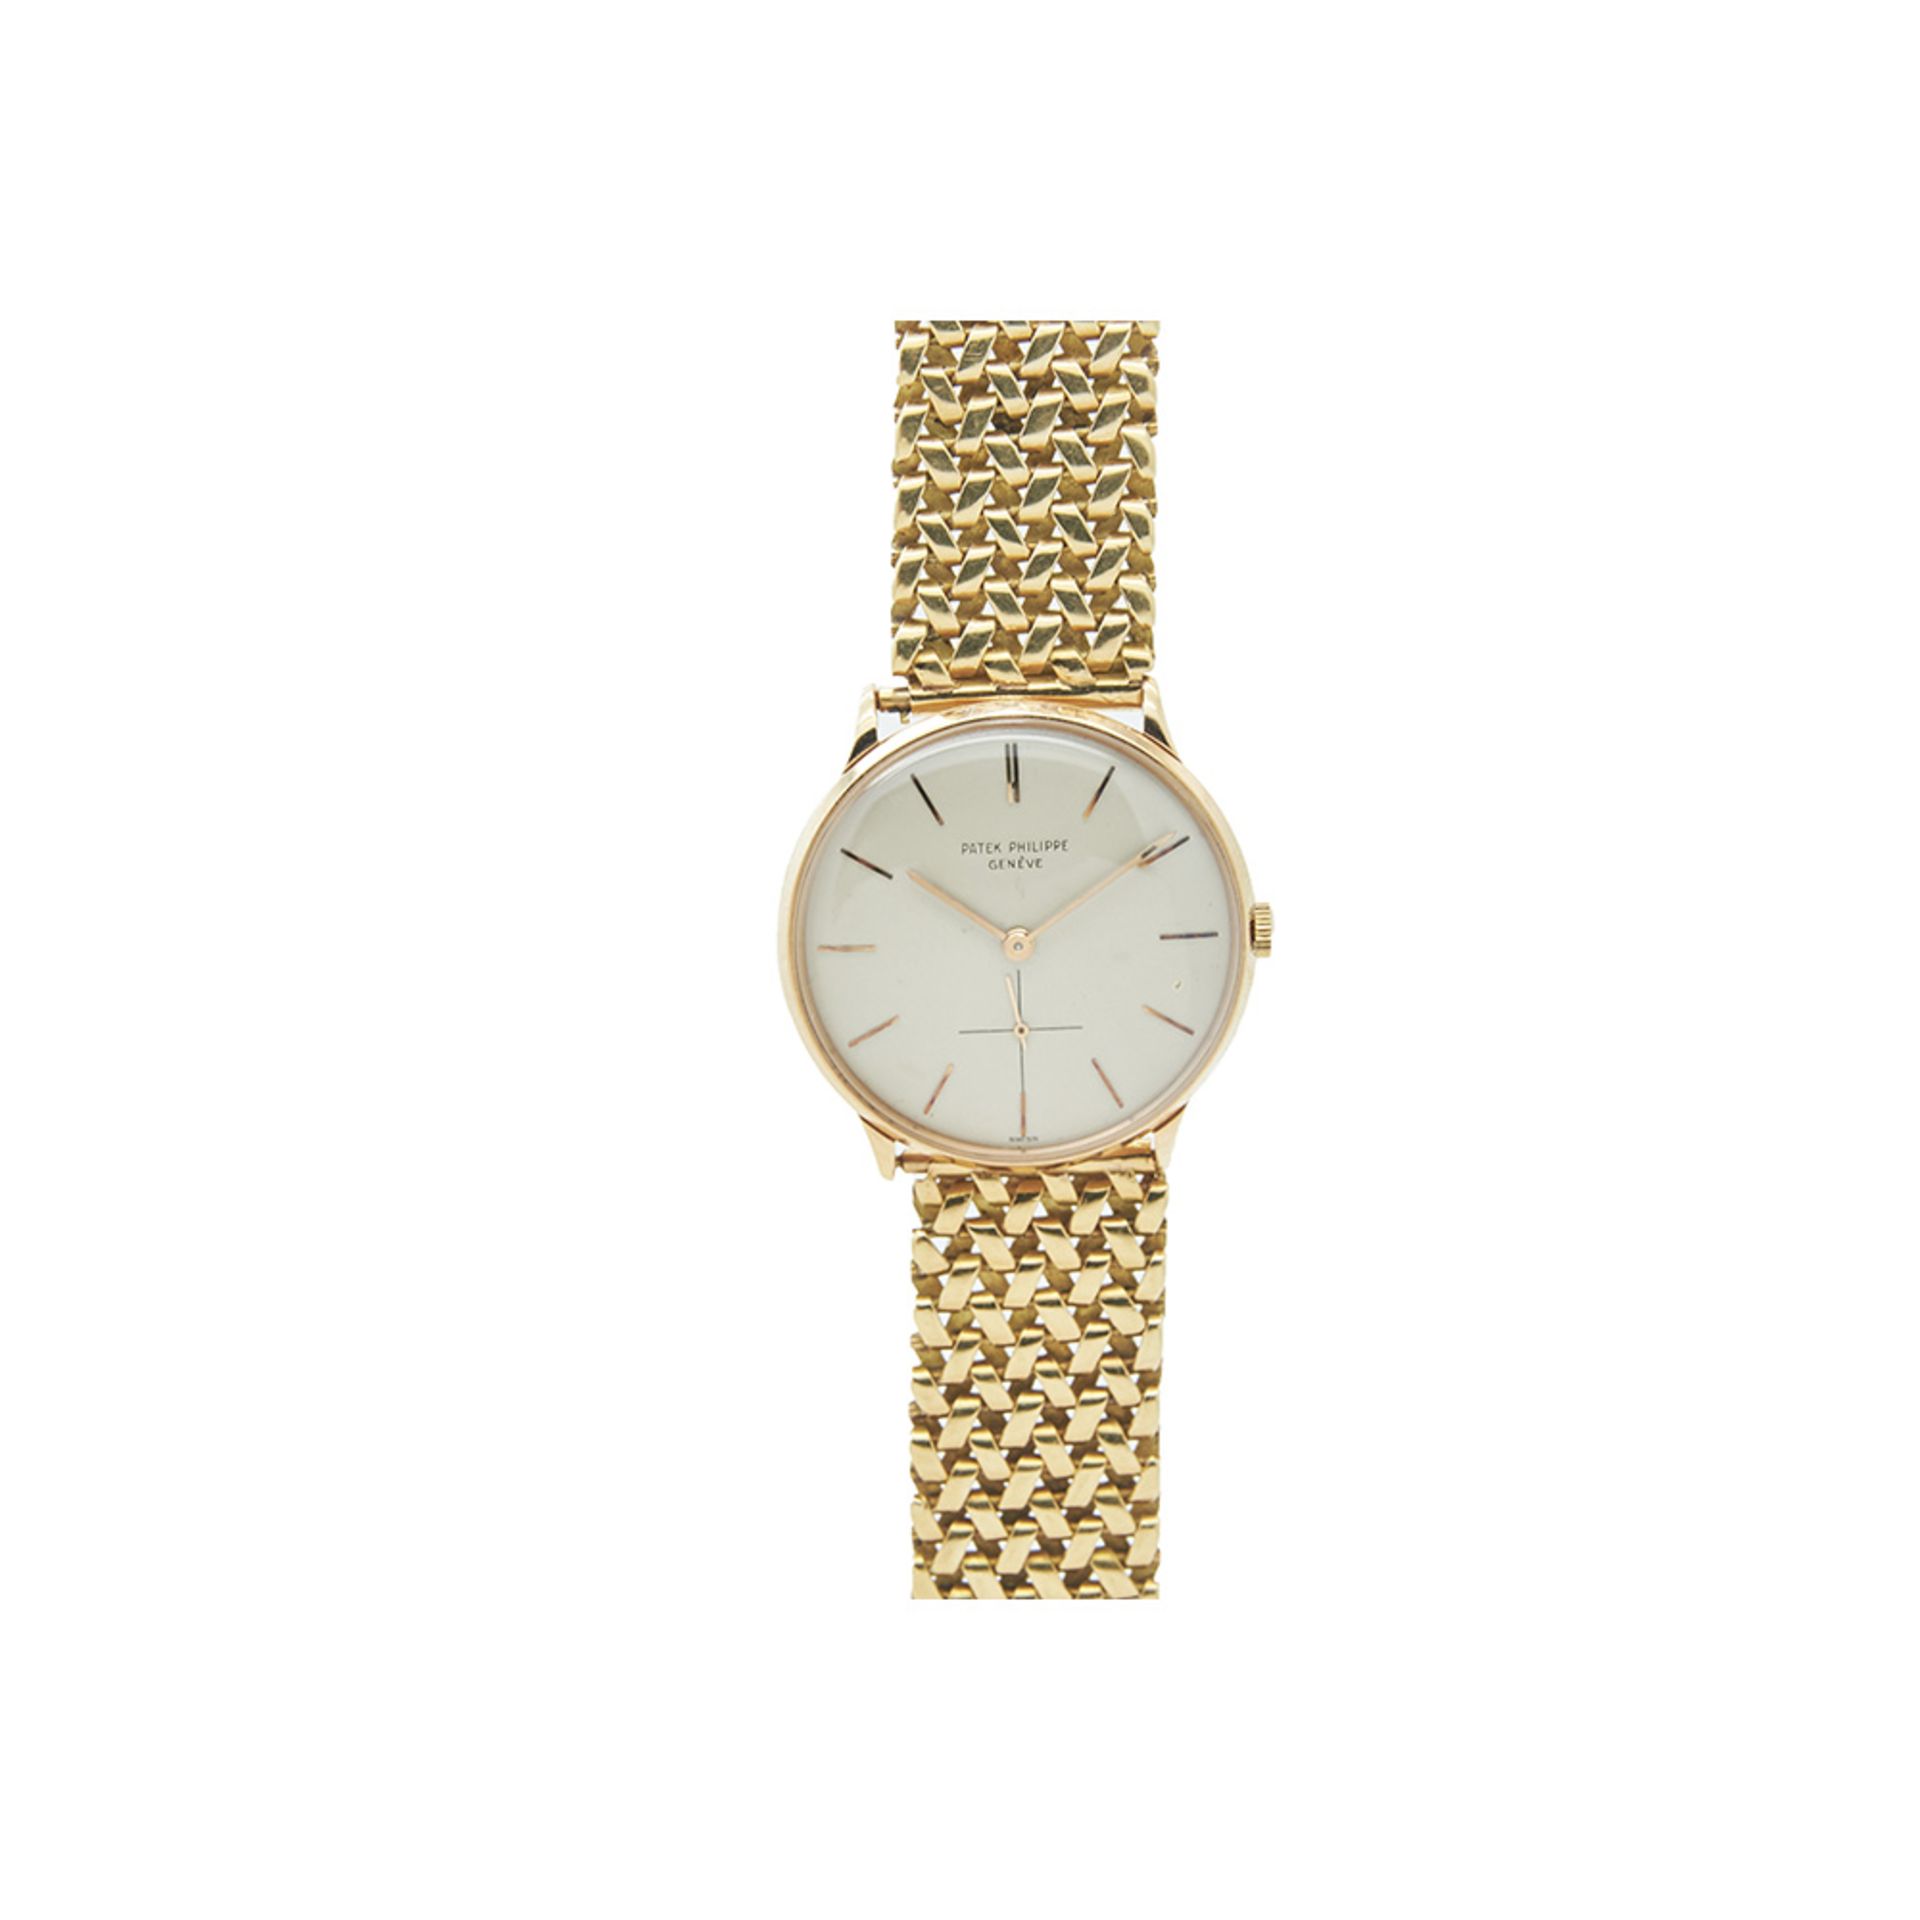 Reloj Patek Philippe de pulsera para caballero, c.1960. En oro. Ref. 2573R-426792. Esfera blanca con